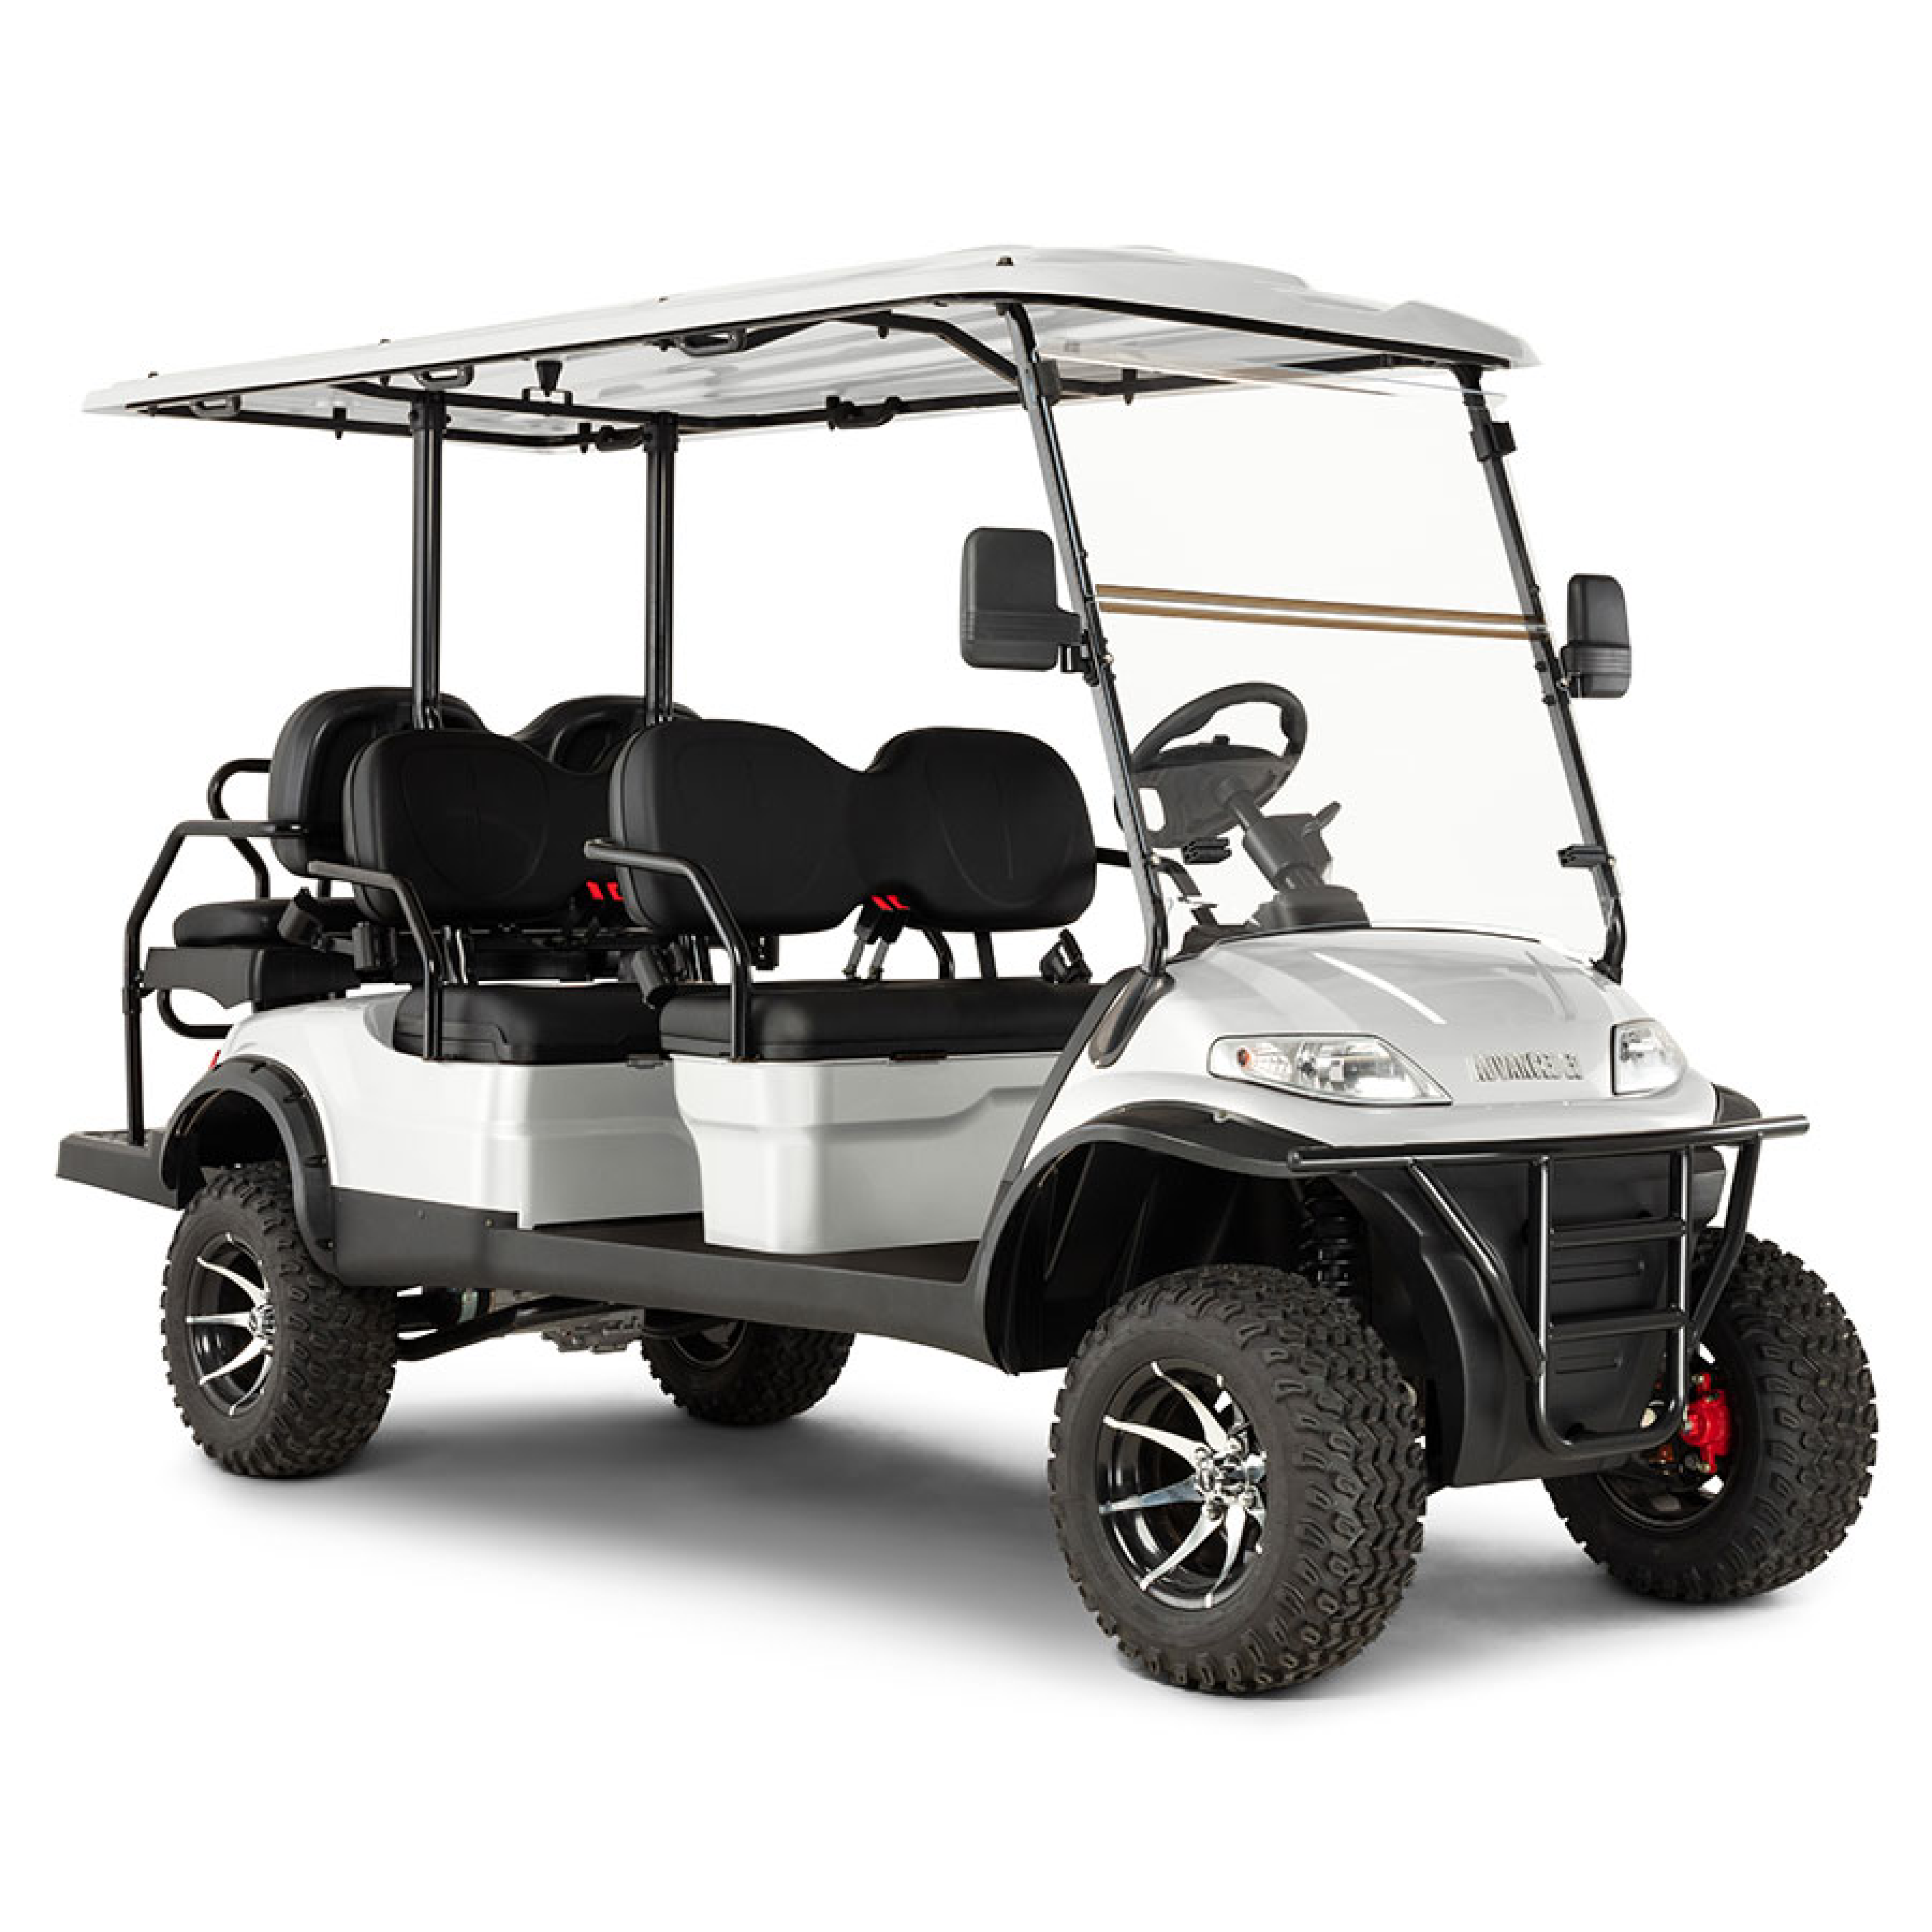 Main Golf Cart Image